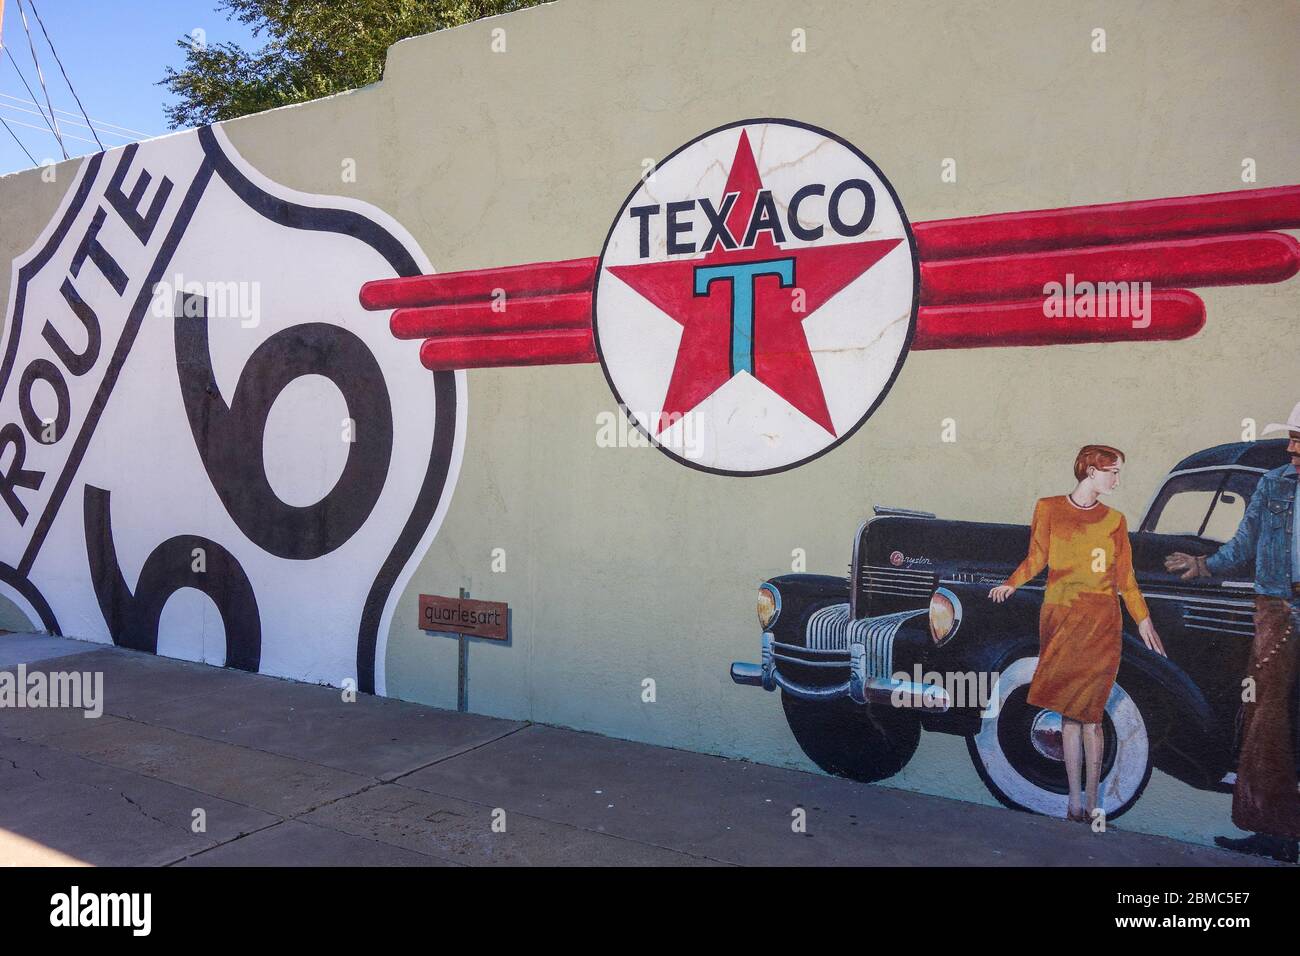 Restored Texaco gas station in Tucumcari, New Mexico along Route 66 Stock Photo